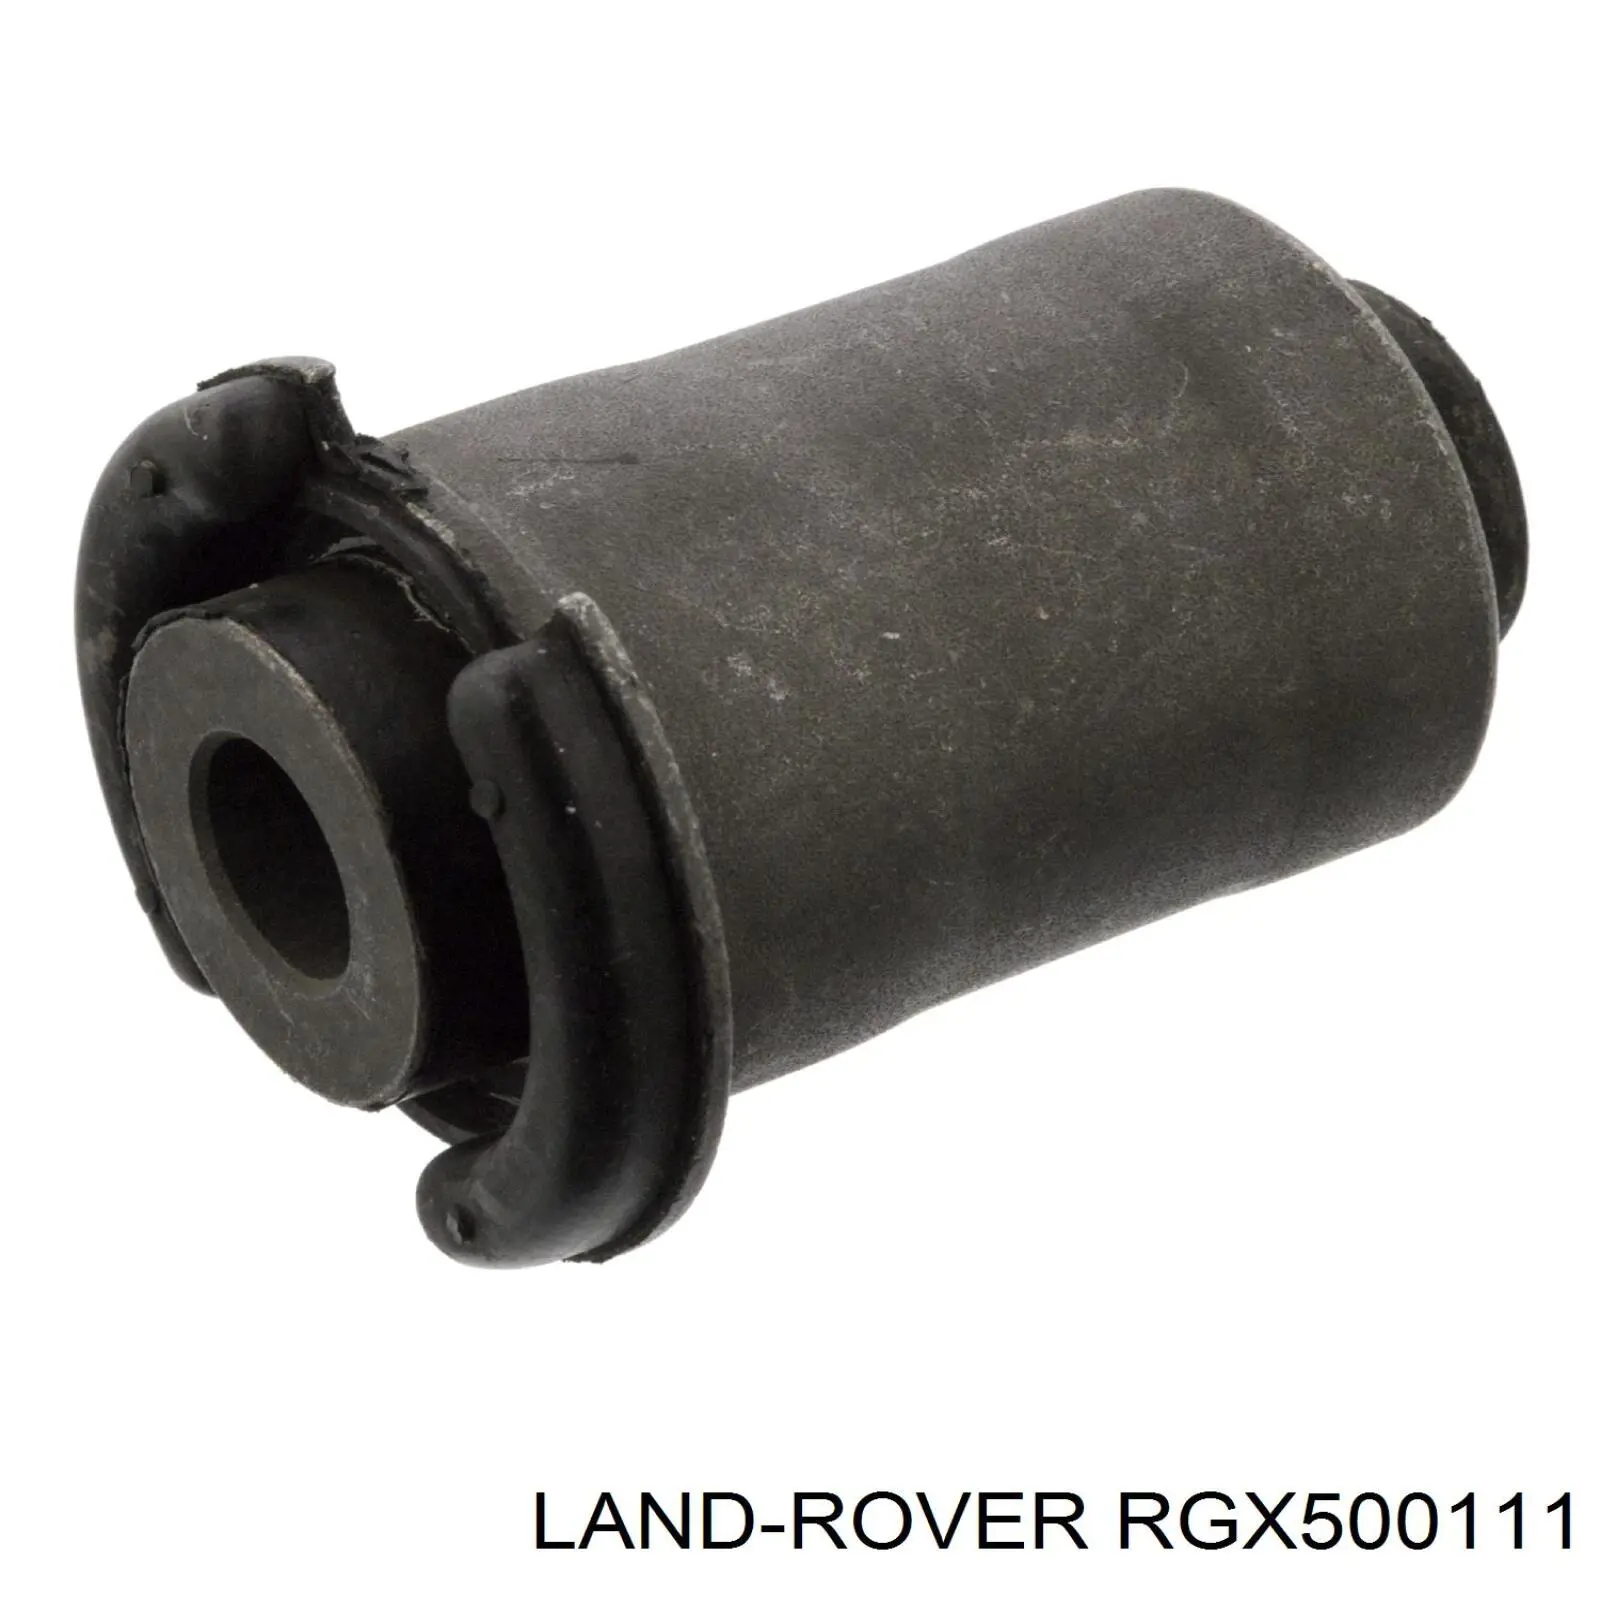 RGX500111 Land Rover suspensión, brazo oscilante trasero inferior